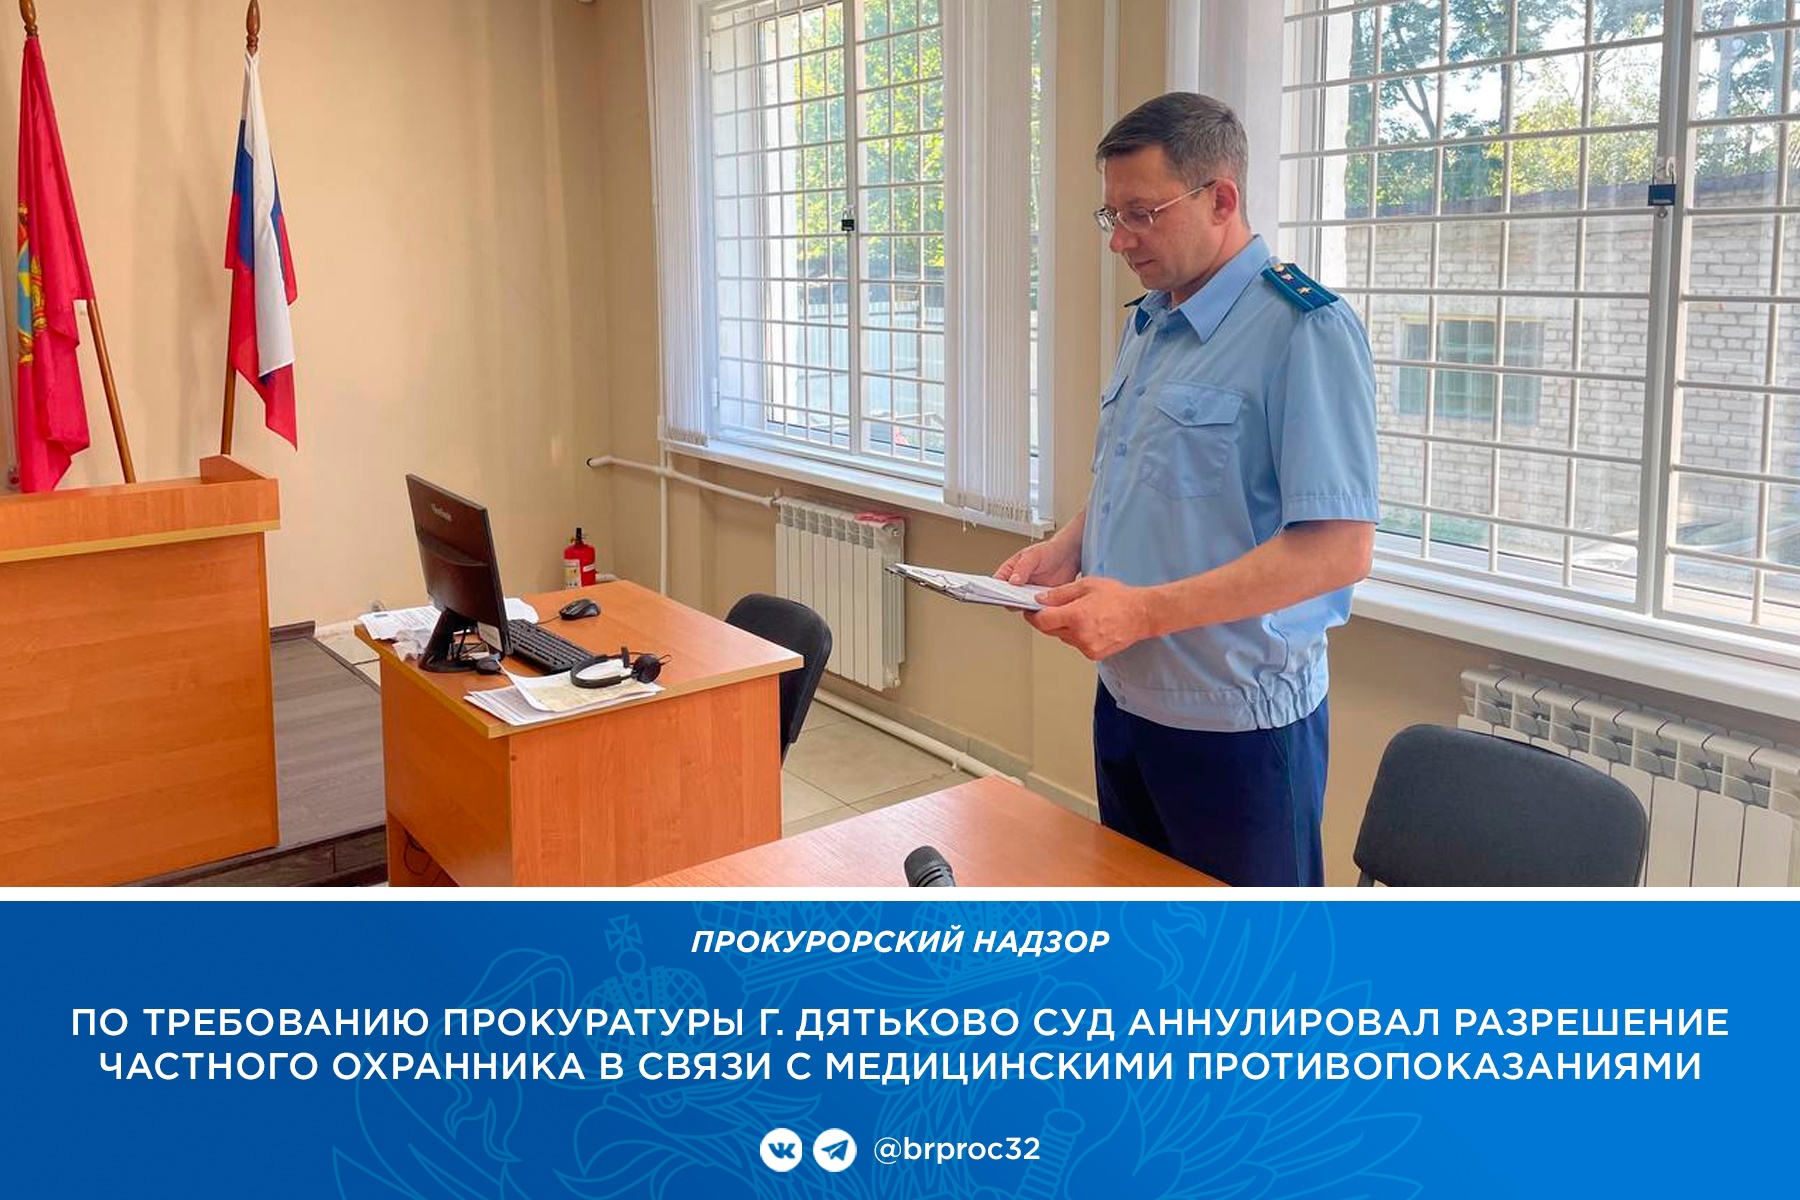 Жителю Дятьково суд аннулировал удостоверение частного охранника по медицинским показаниям